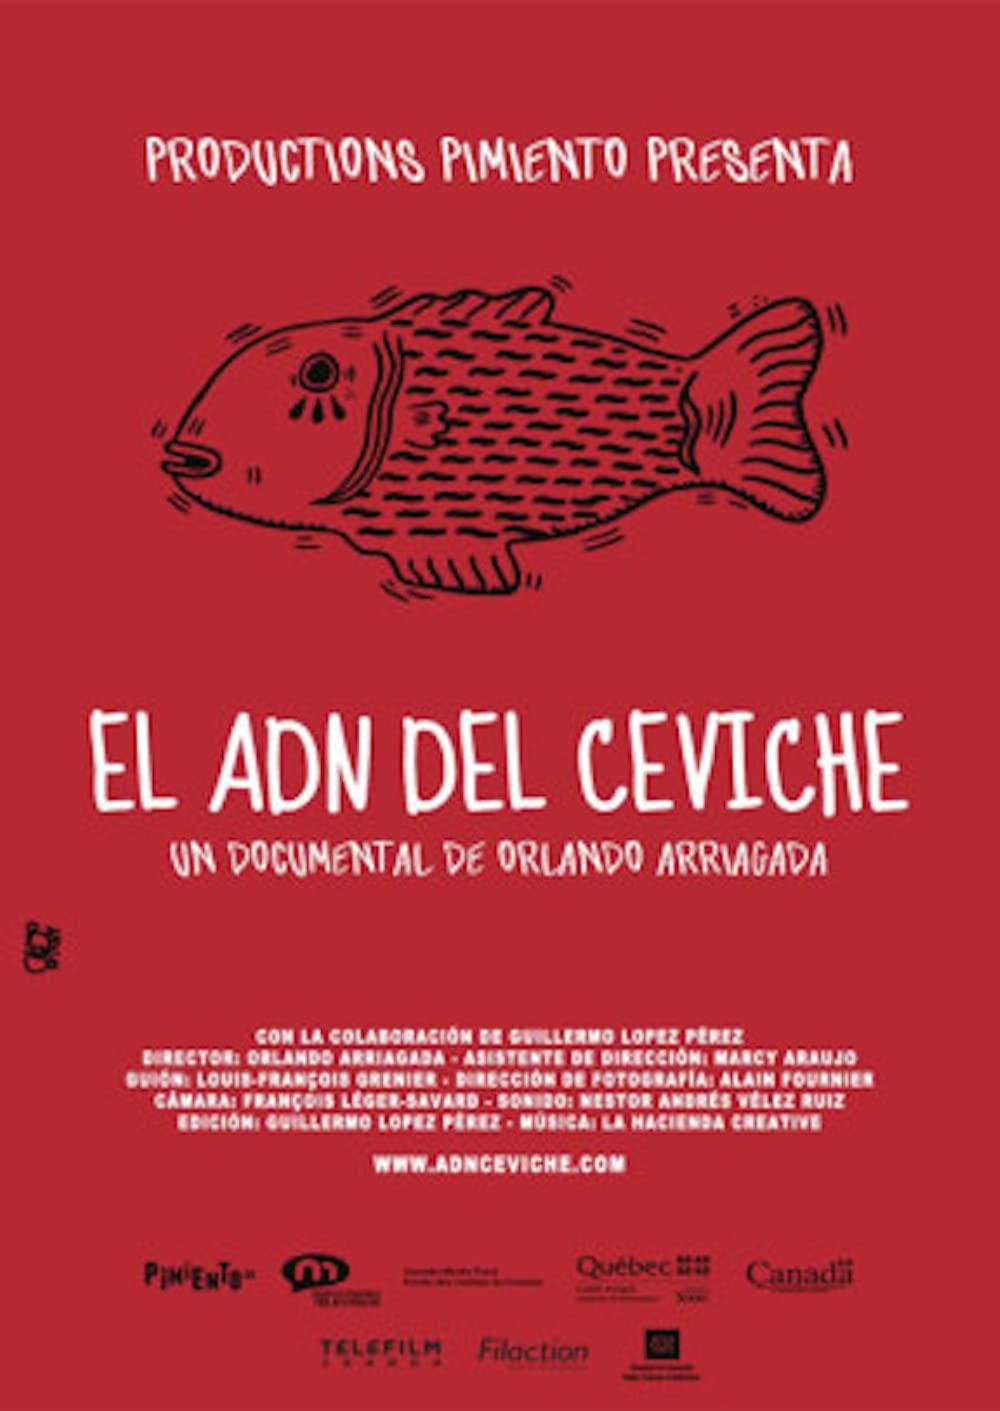 Filmbeschreibung zu Ceviche, mein Lieblingsgericht aus Peru